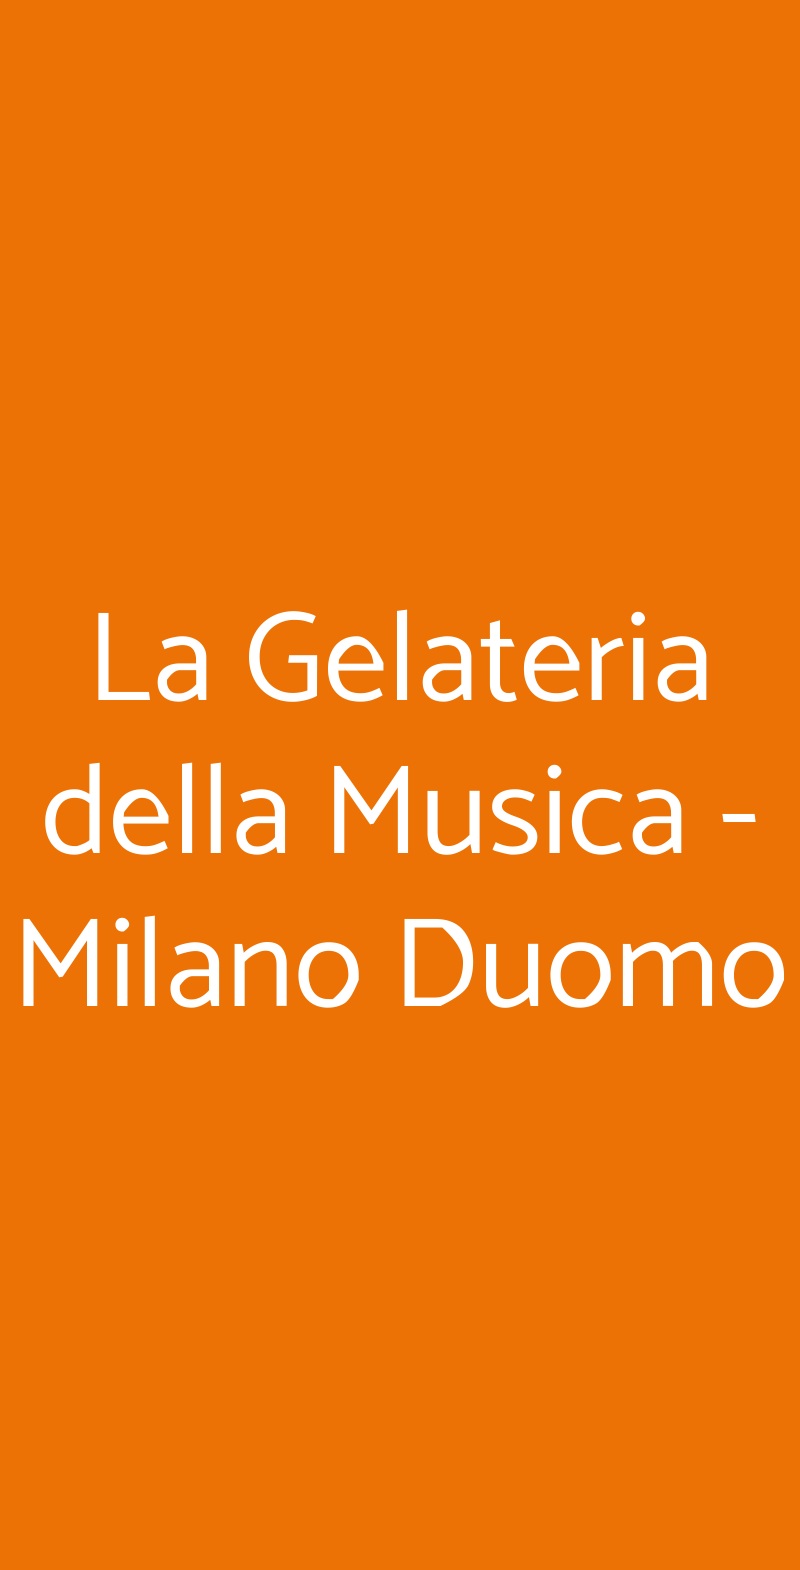 La Gelateria della Musica - Milano Duomo Milano menù 1 pagina